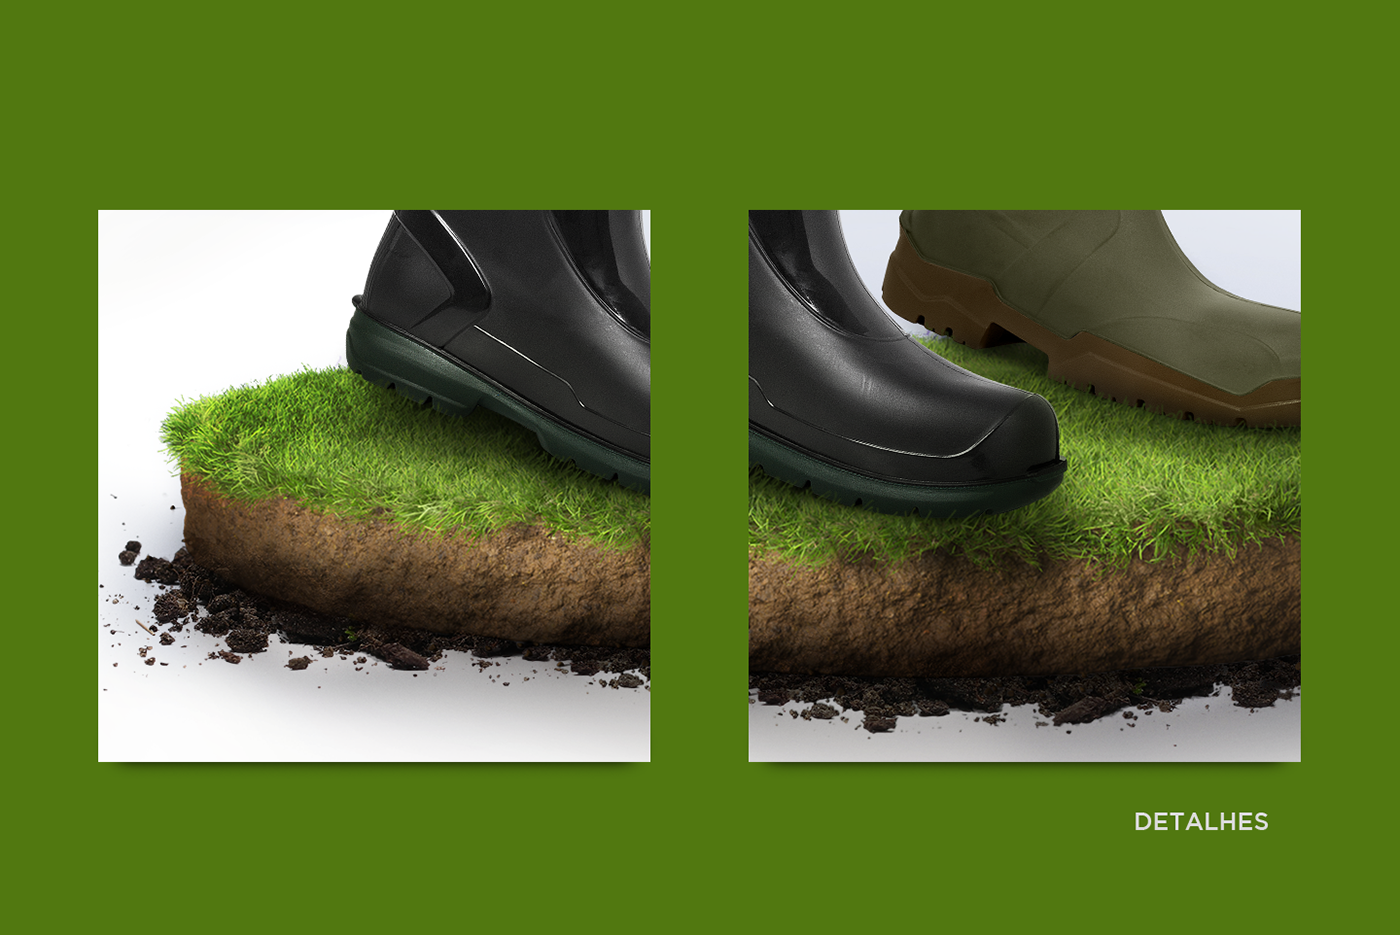 Agronegócio boots Bota Calçado campo grama sapato shoes Verde